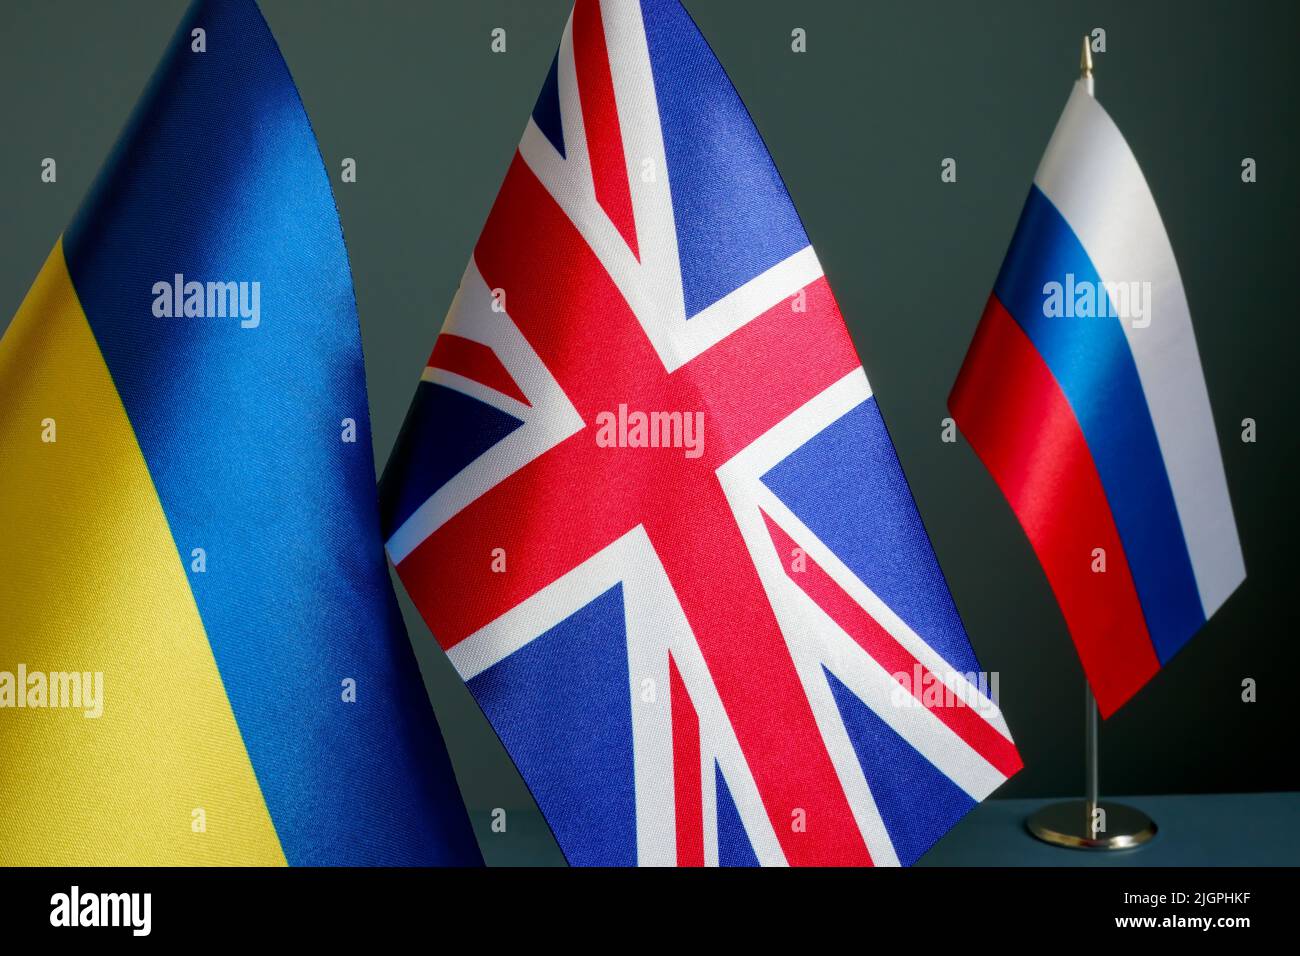 Le bandiere di Ucraina e Gran Bretagna sono lontane dalla bandiera della Russia. Foto Stock